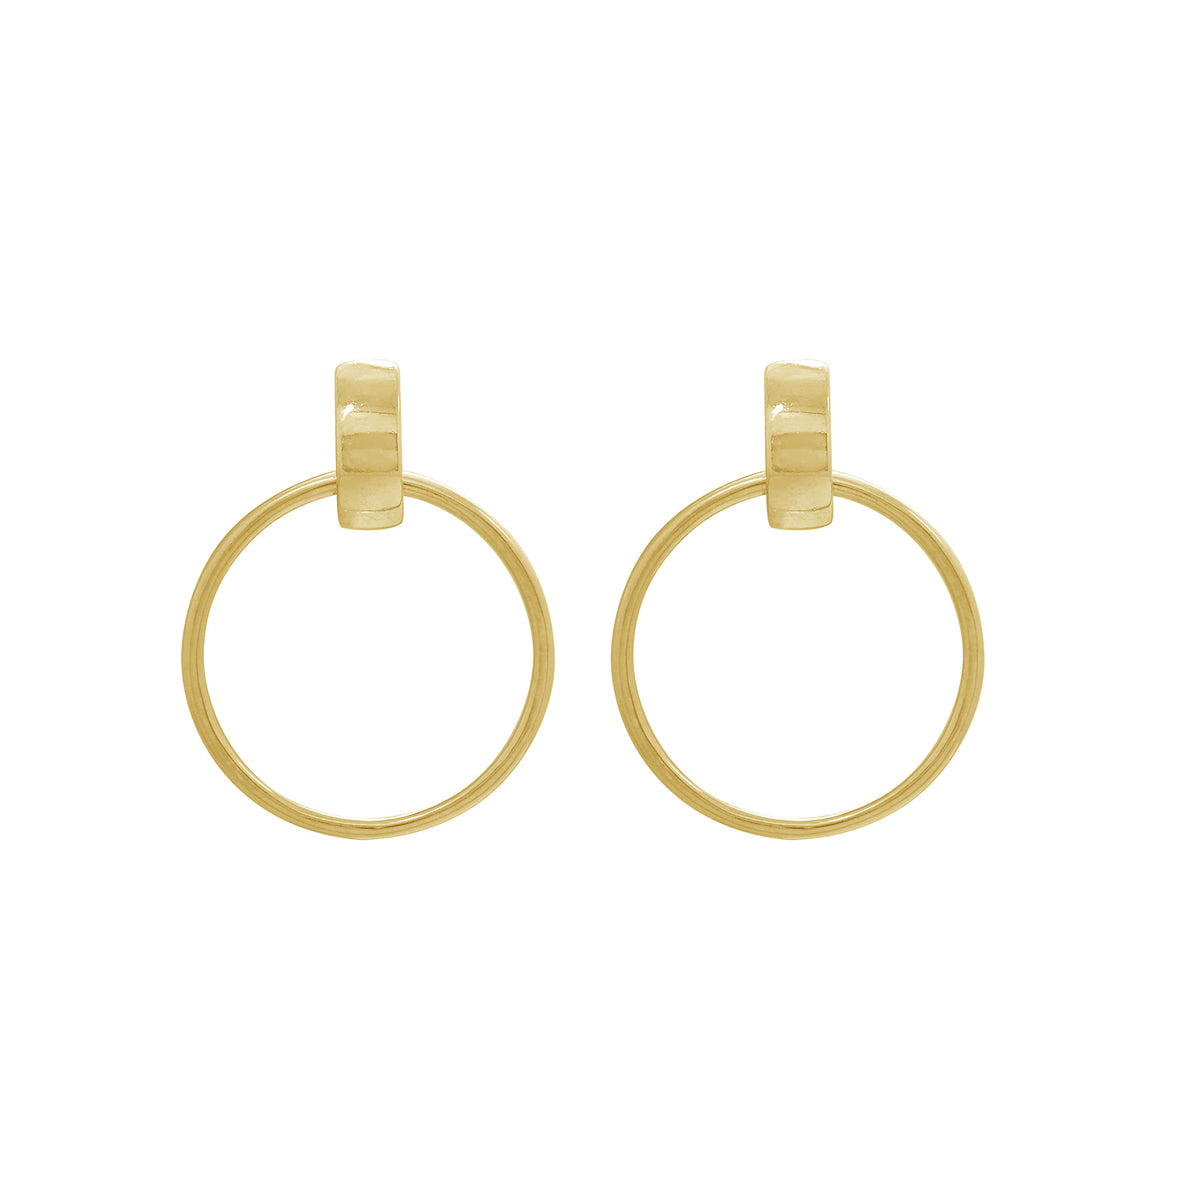 GEMOUR-Yellow-Gold-Clad-Sterling-Silver-Hoop-Stud-Earrings